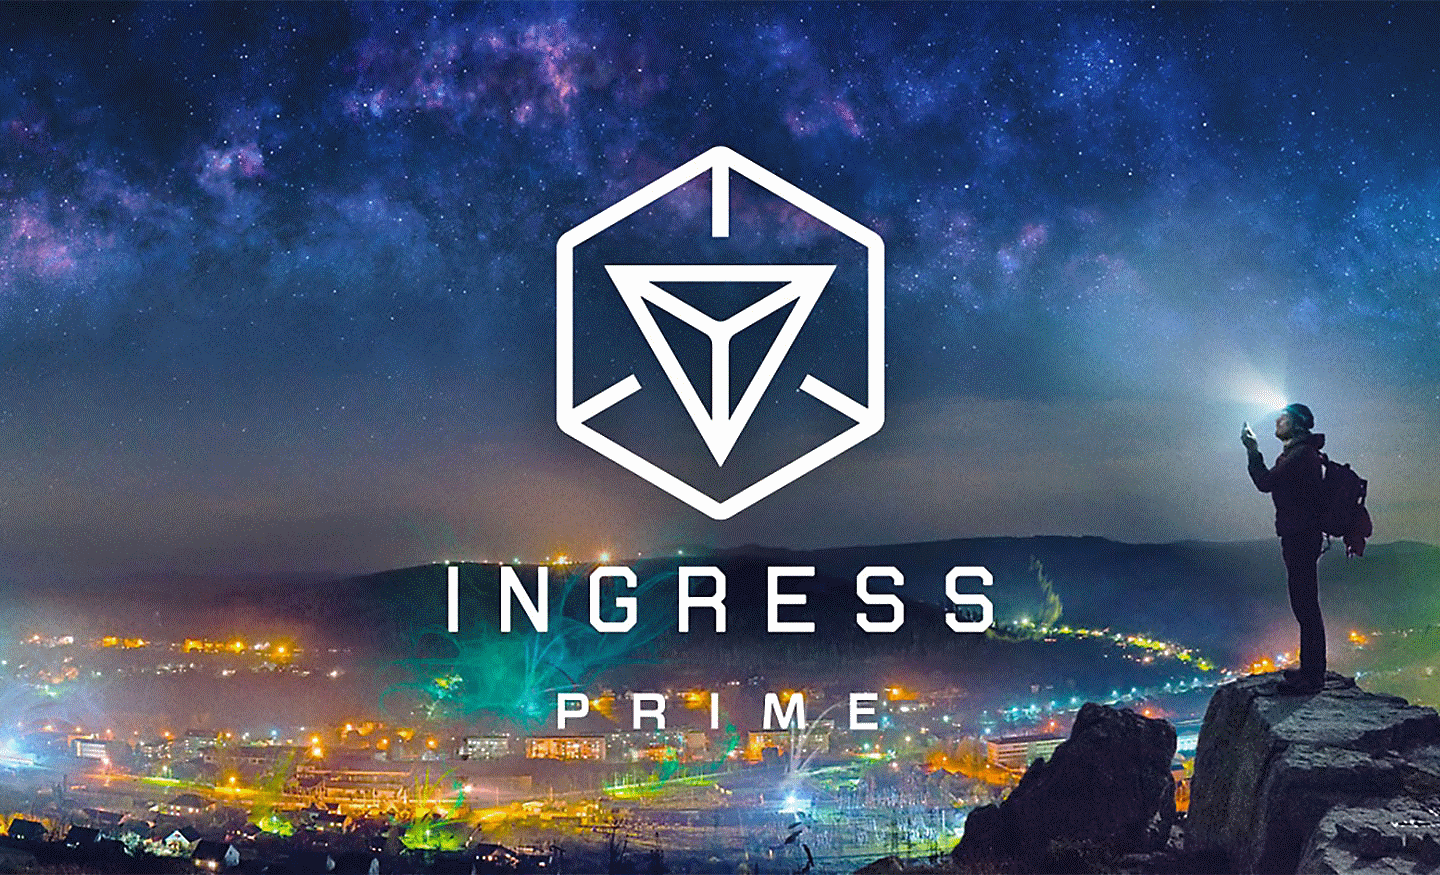 Obrázok mesta zhora s prekrývajúcim logom Ingress Prime uprostred